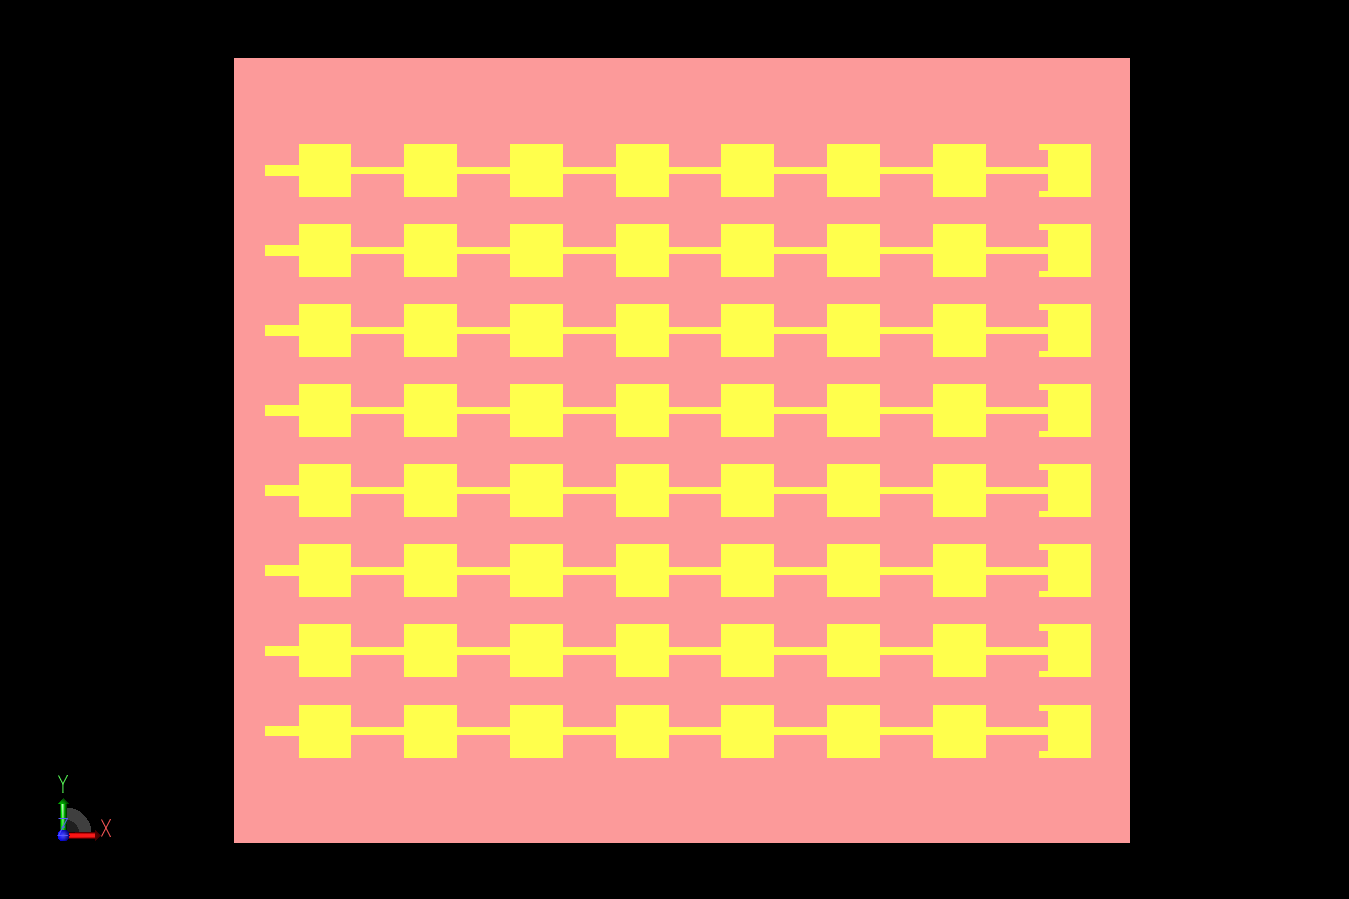 Abbildung 5: Die Abbildung zeigt eine CAD-Darstellung der Kombination von acht 1x8-Elementen zu einem Array. Die Elemente haben einen Abstand von 5,352 mm von Mitte zu Mitte.